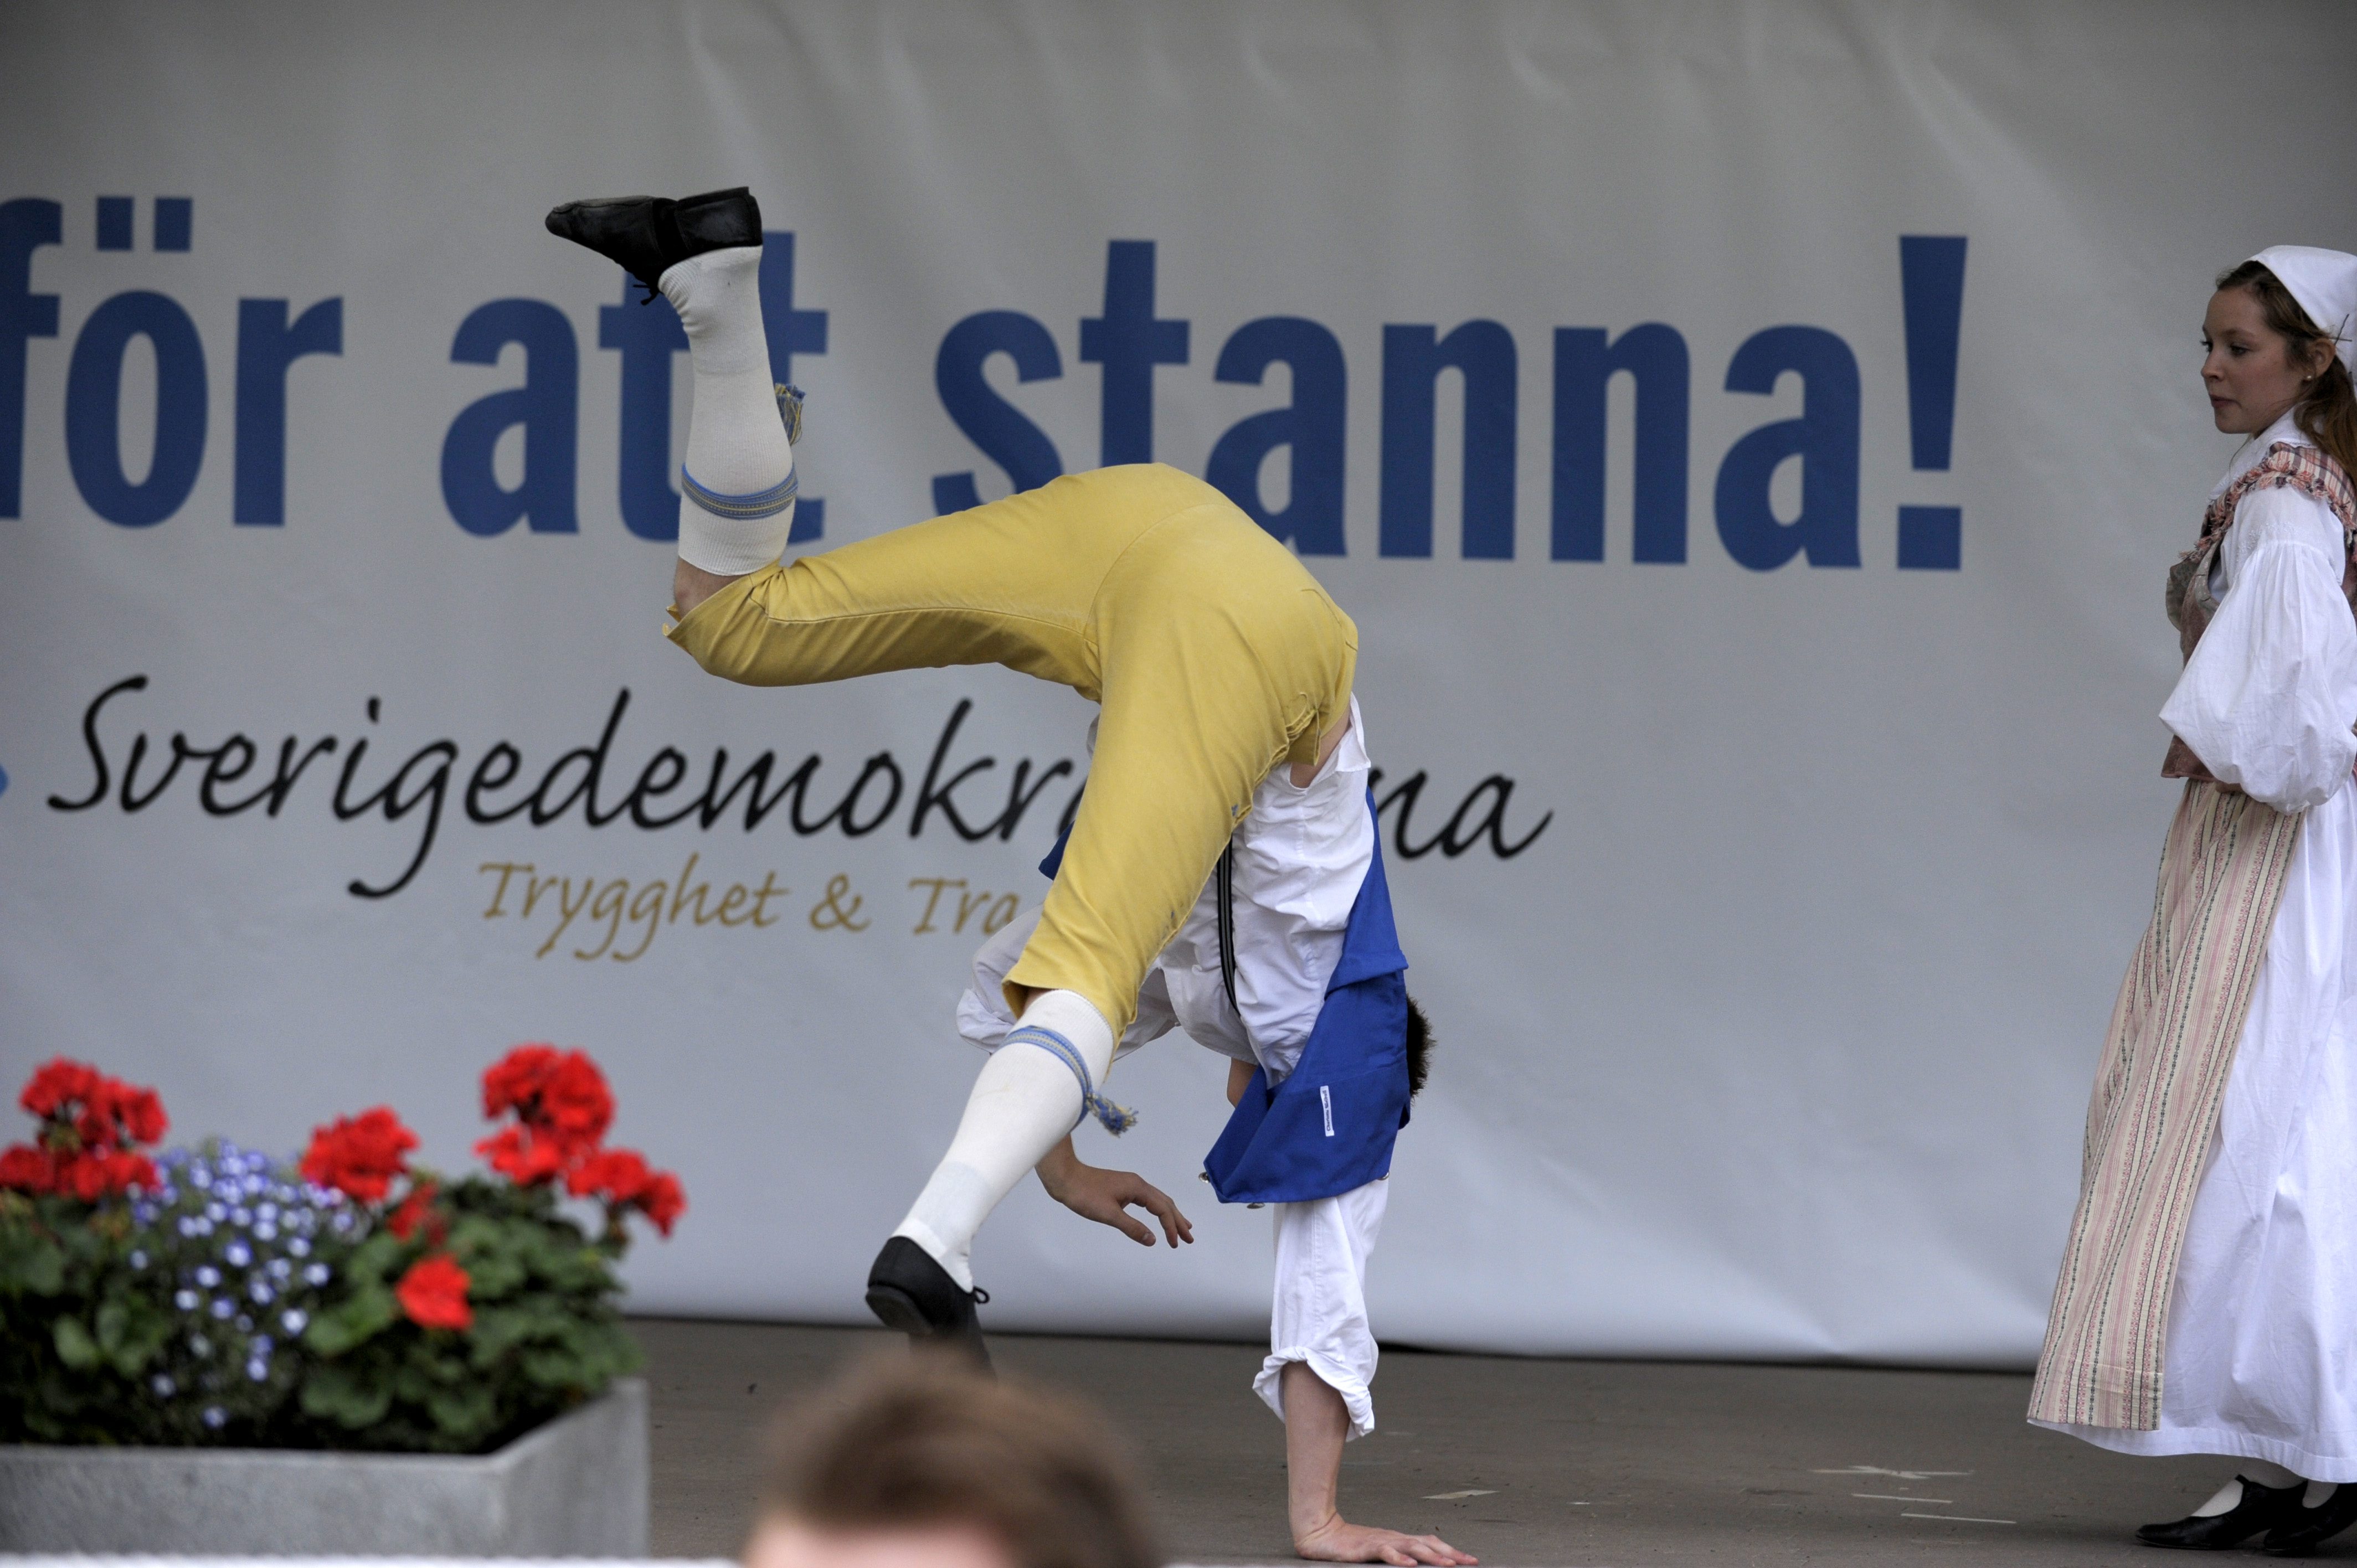 "Här för att stanna", stod det på SD:s backdrop i Almedalen 2011.